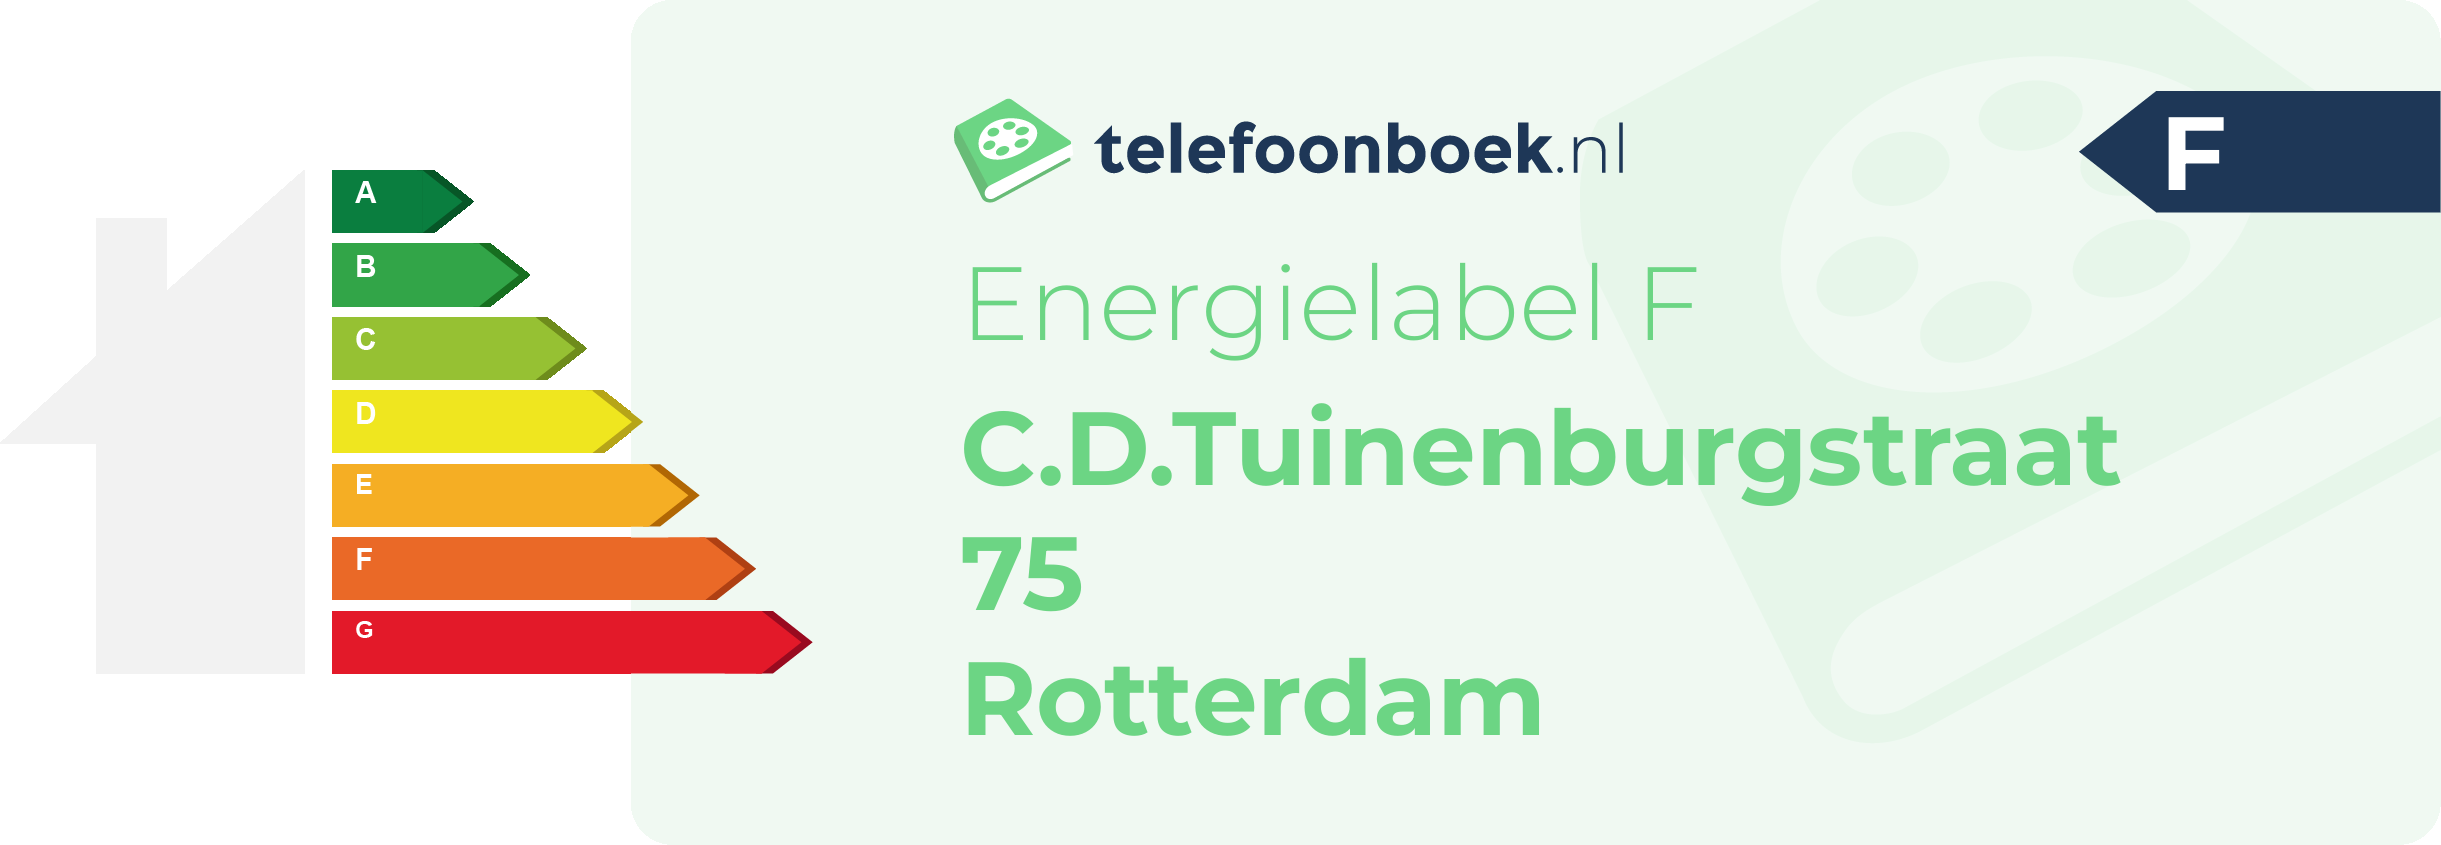 Energielabel C.D.Tuinenburgstraat 75 Rotterdam